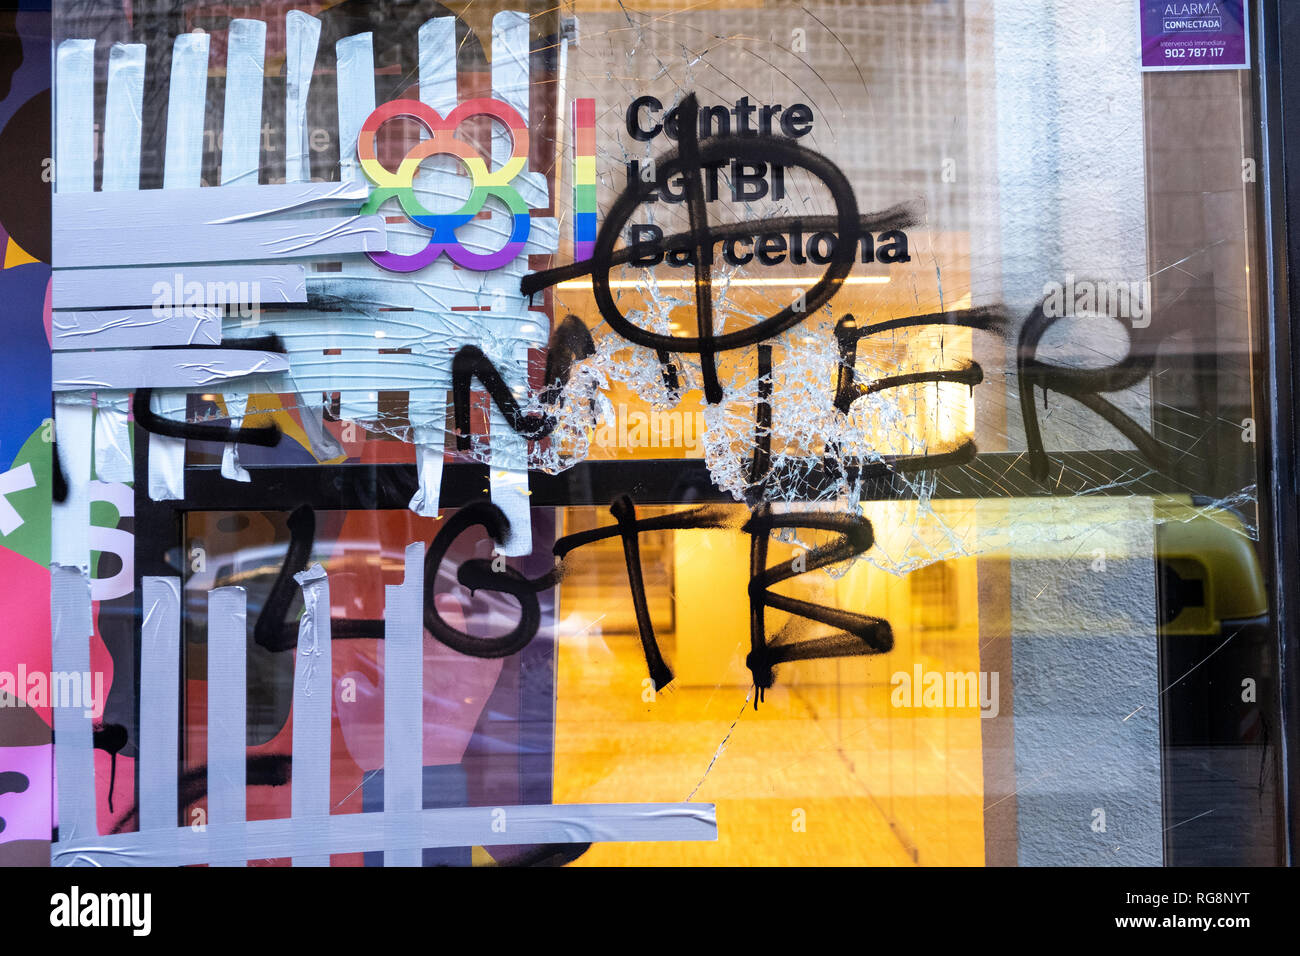 Des menaces de mort écrites sont vus sur la fenêtre du nouveau centre LGTBI à Barcelone au cours de la protestation. La communauté LGTBI, avec l'appui du maire de Barcelone Ada Colau, ont fait un acte de protestation contre l'attaque fasciste contre le nouveau siège de la convention collective. LGTBI Le premier centre LGTBI en Catalogne est apparu avec menace de mort textes et du verre brisé après le lancement. Banque D'Images